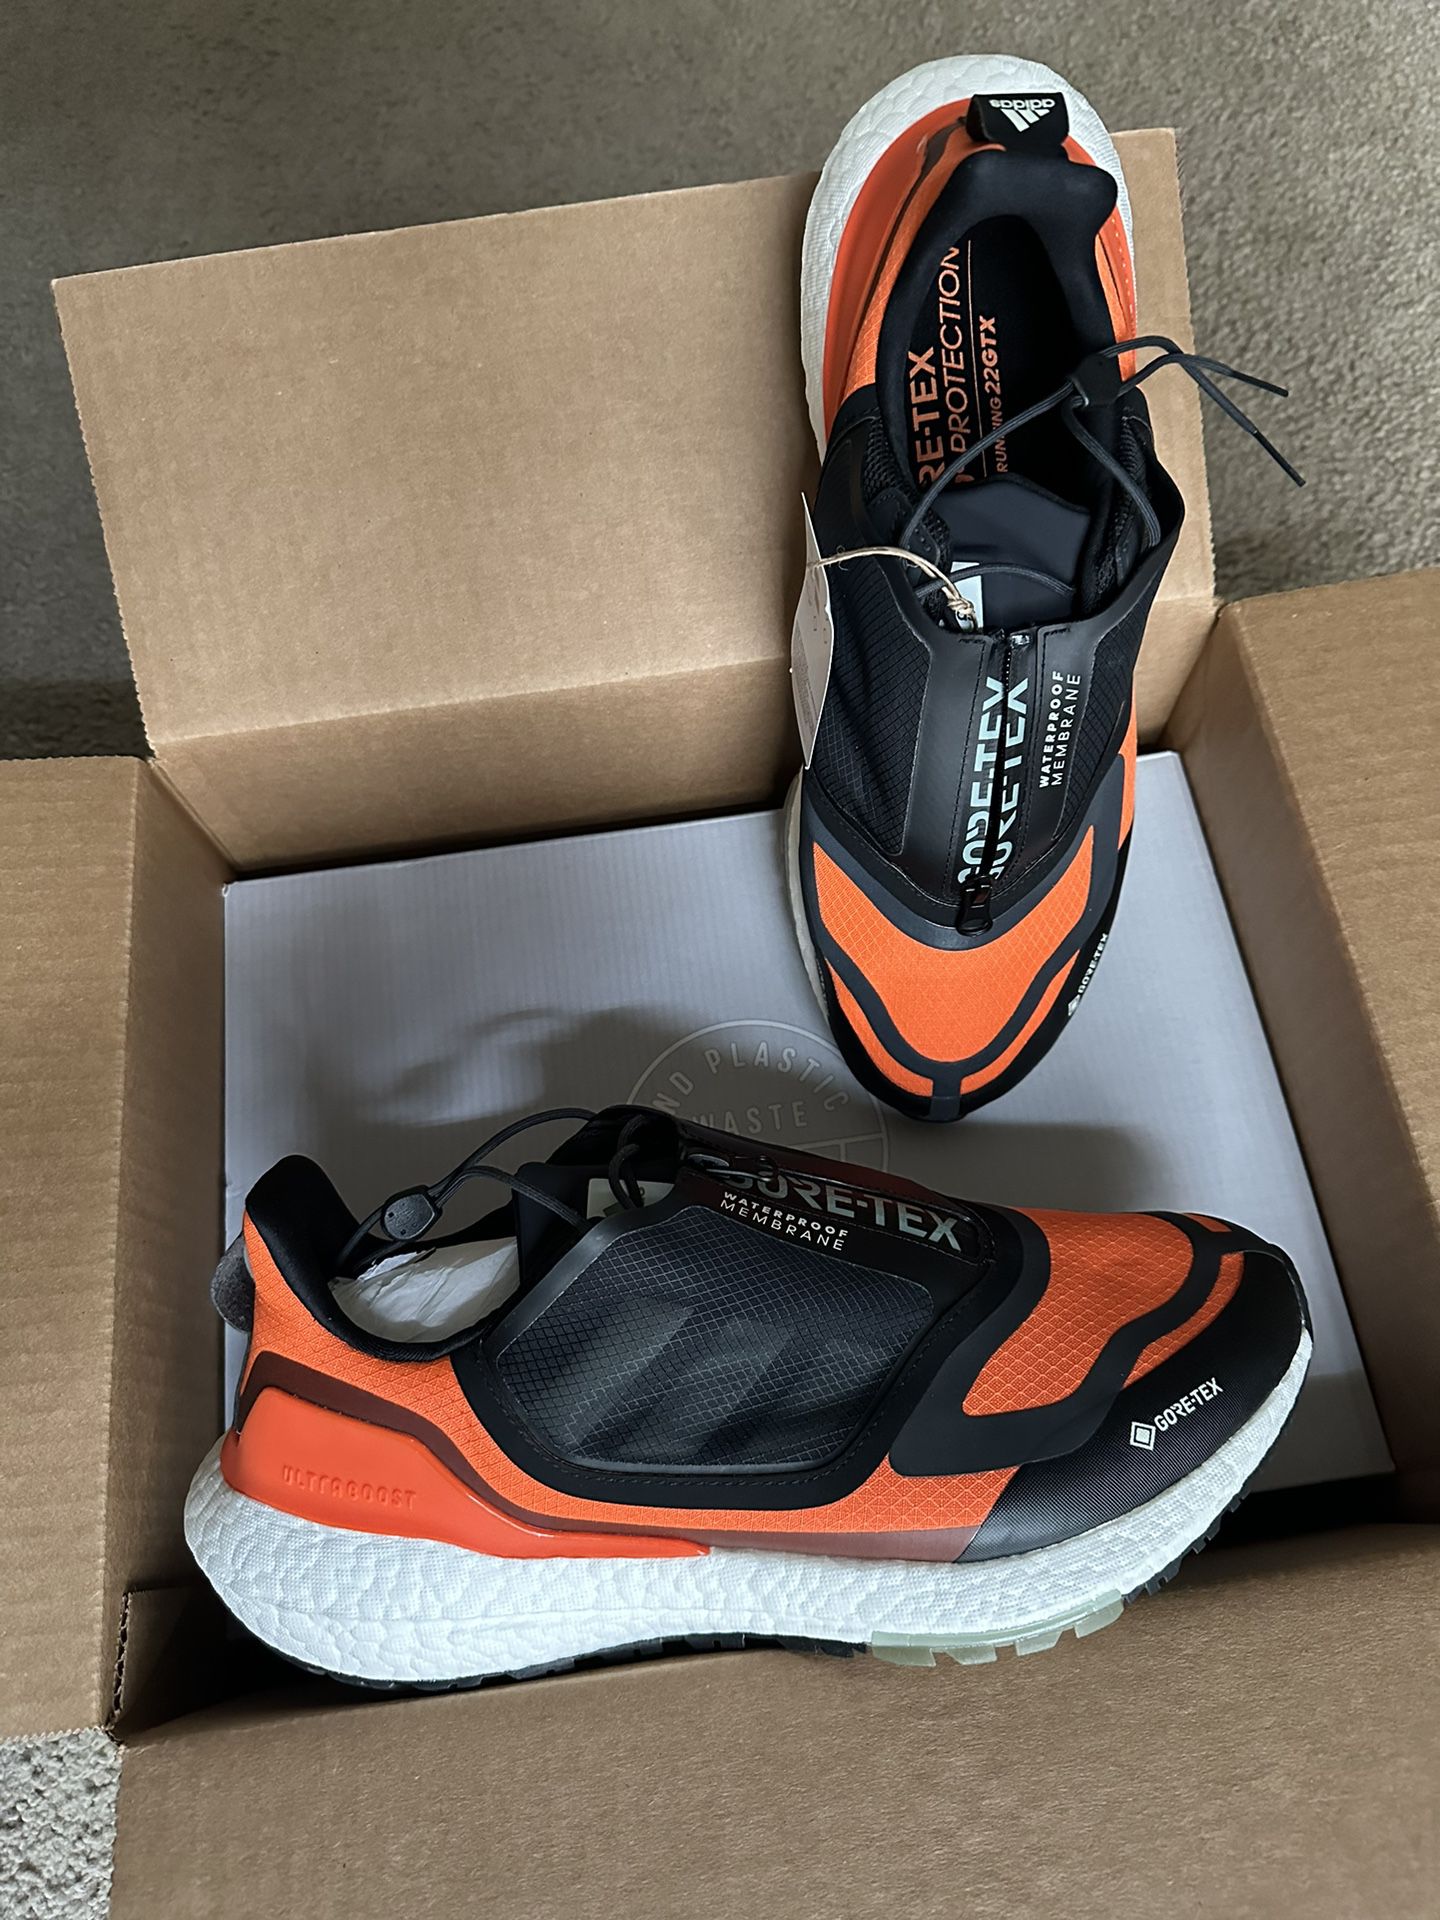 Brand New Adidas Ultraboost goretex Gtx Runners 